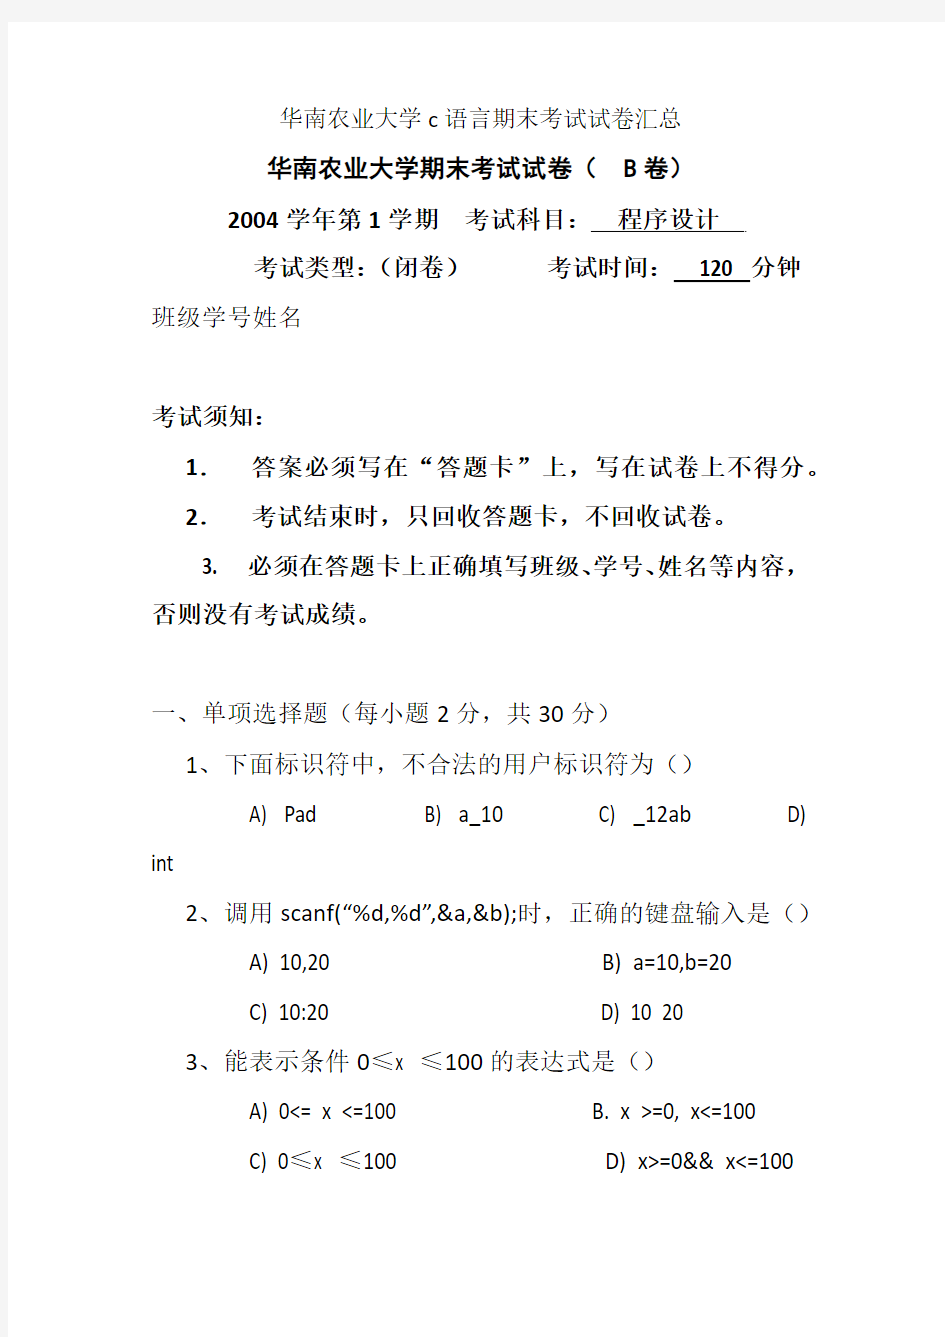 华南农业大学c语言期末考试试卷